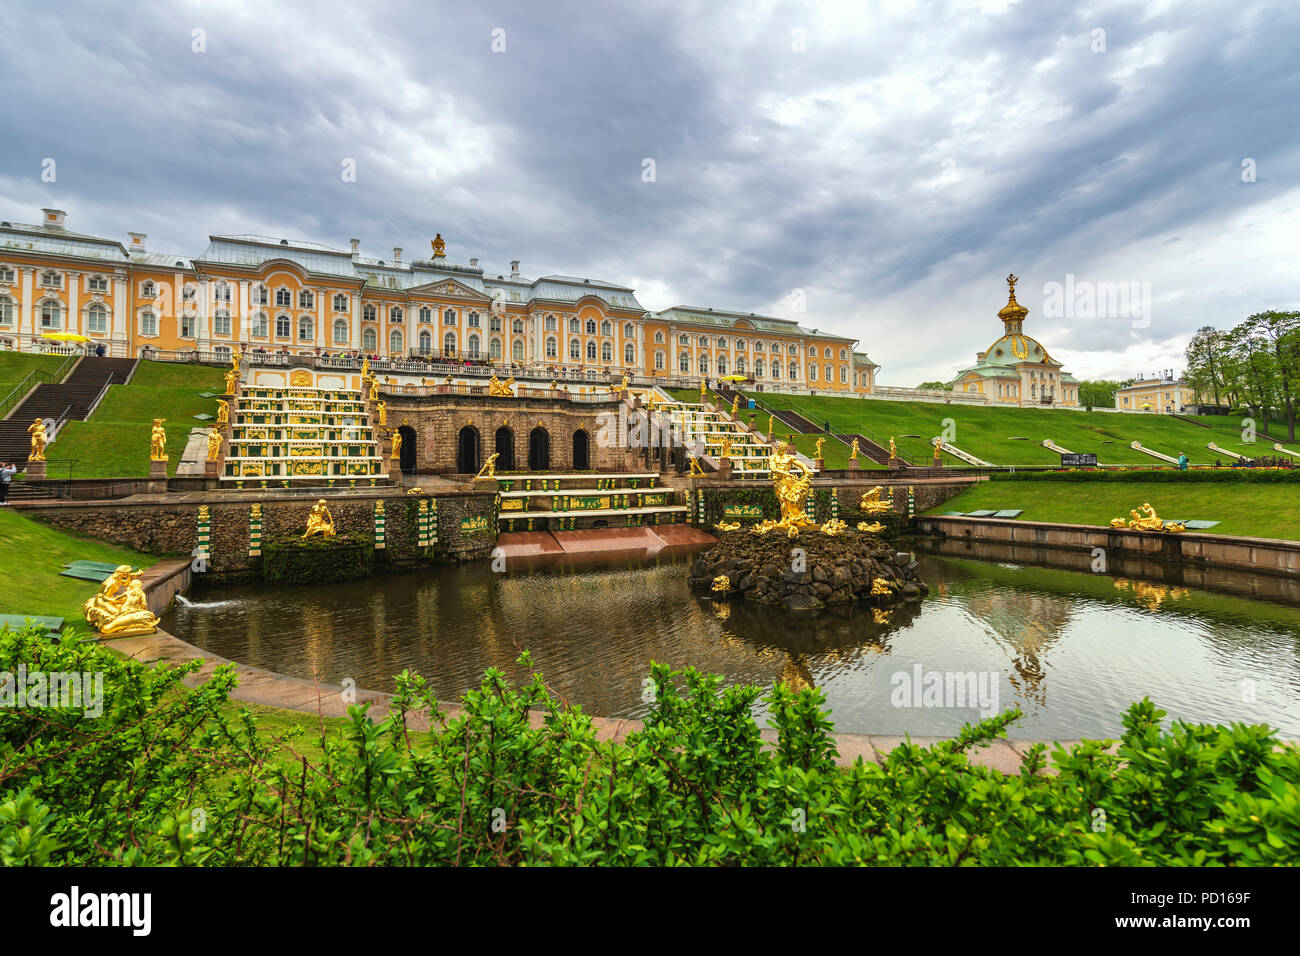 Sankt Petersburg, Russland - 16. MAI 2018: Skyline am unteren Garten und Große Kaskade Springbrunnen von Schloss Peterhof, Sankt Petersburg, Russland Stockfoto